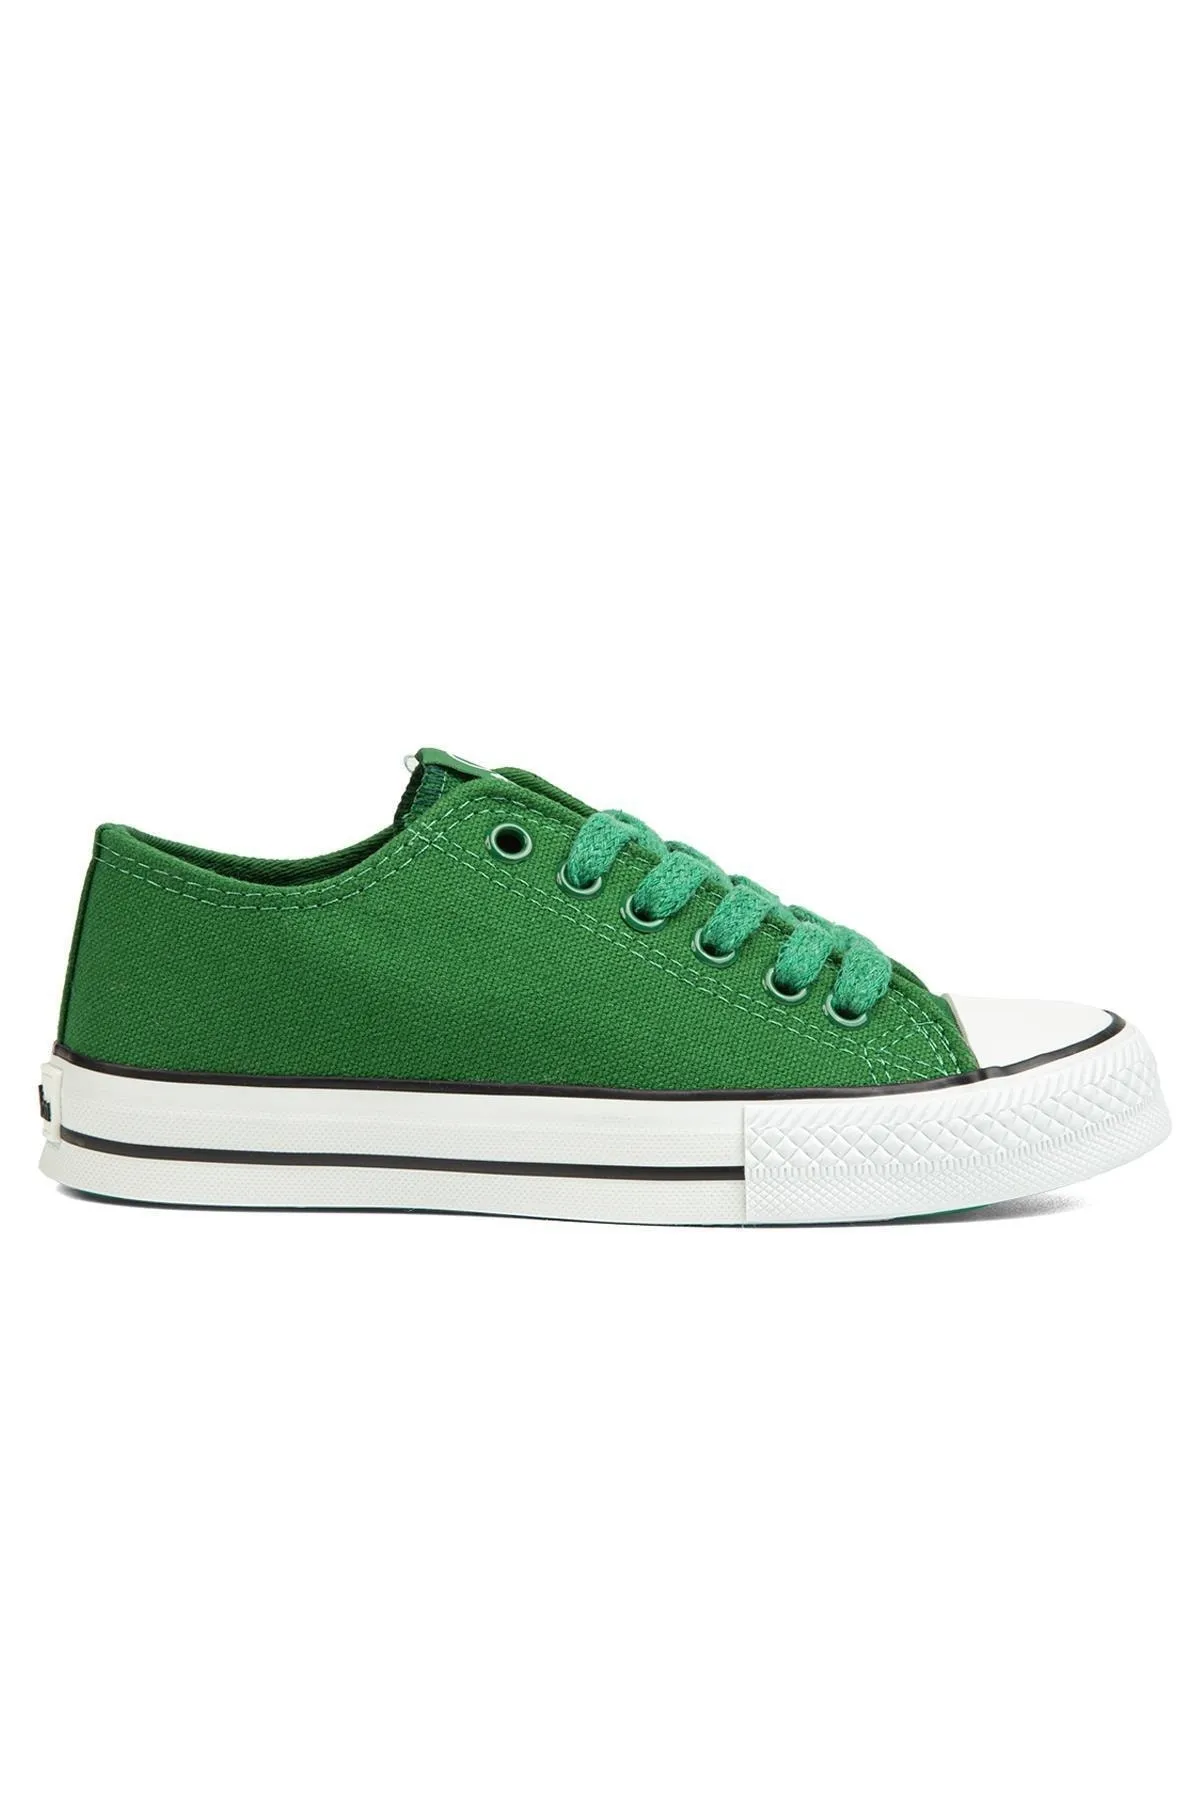 BENETTON - Kadın Spor Ayakkabı BN-30196-Yeşil